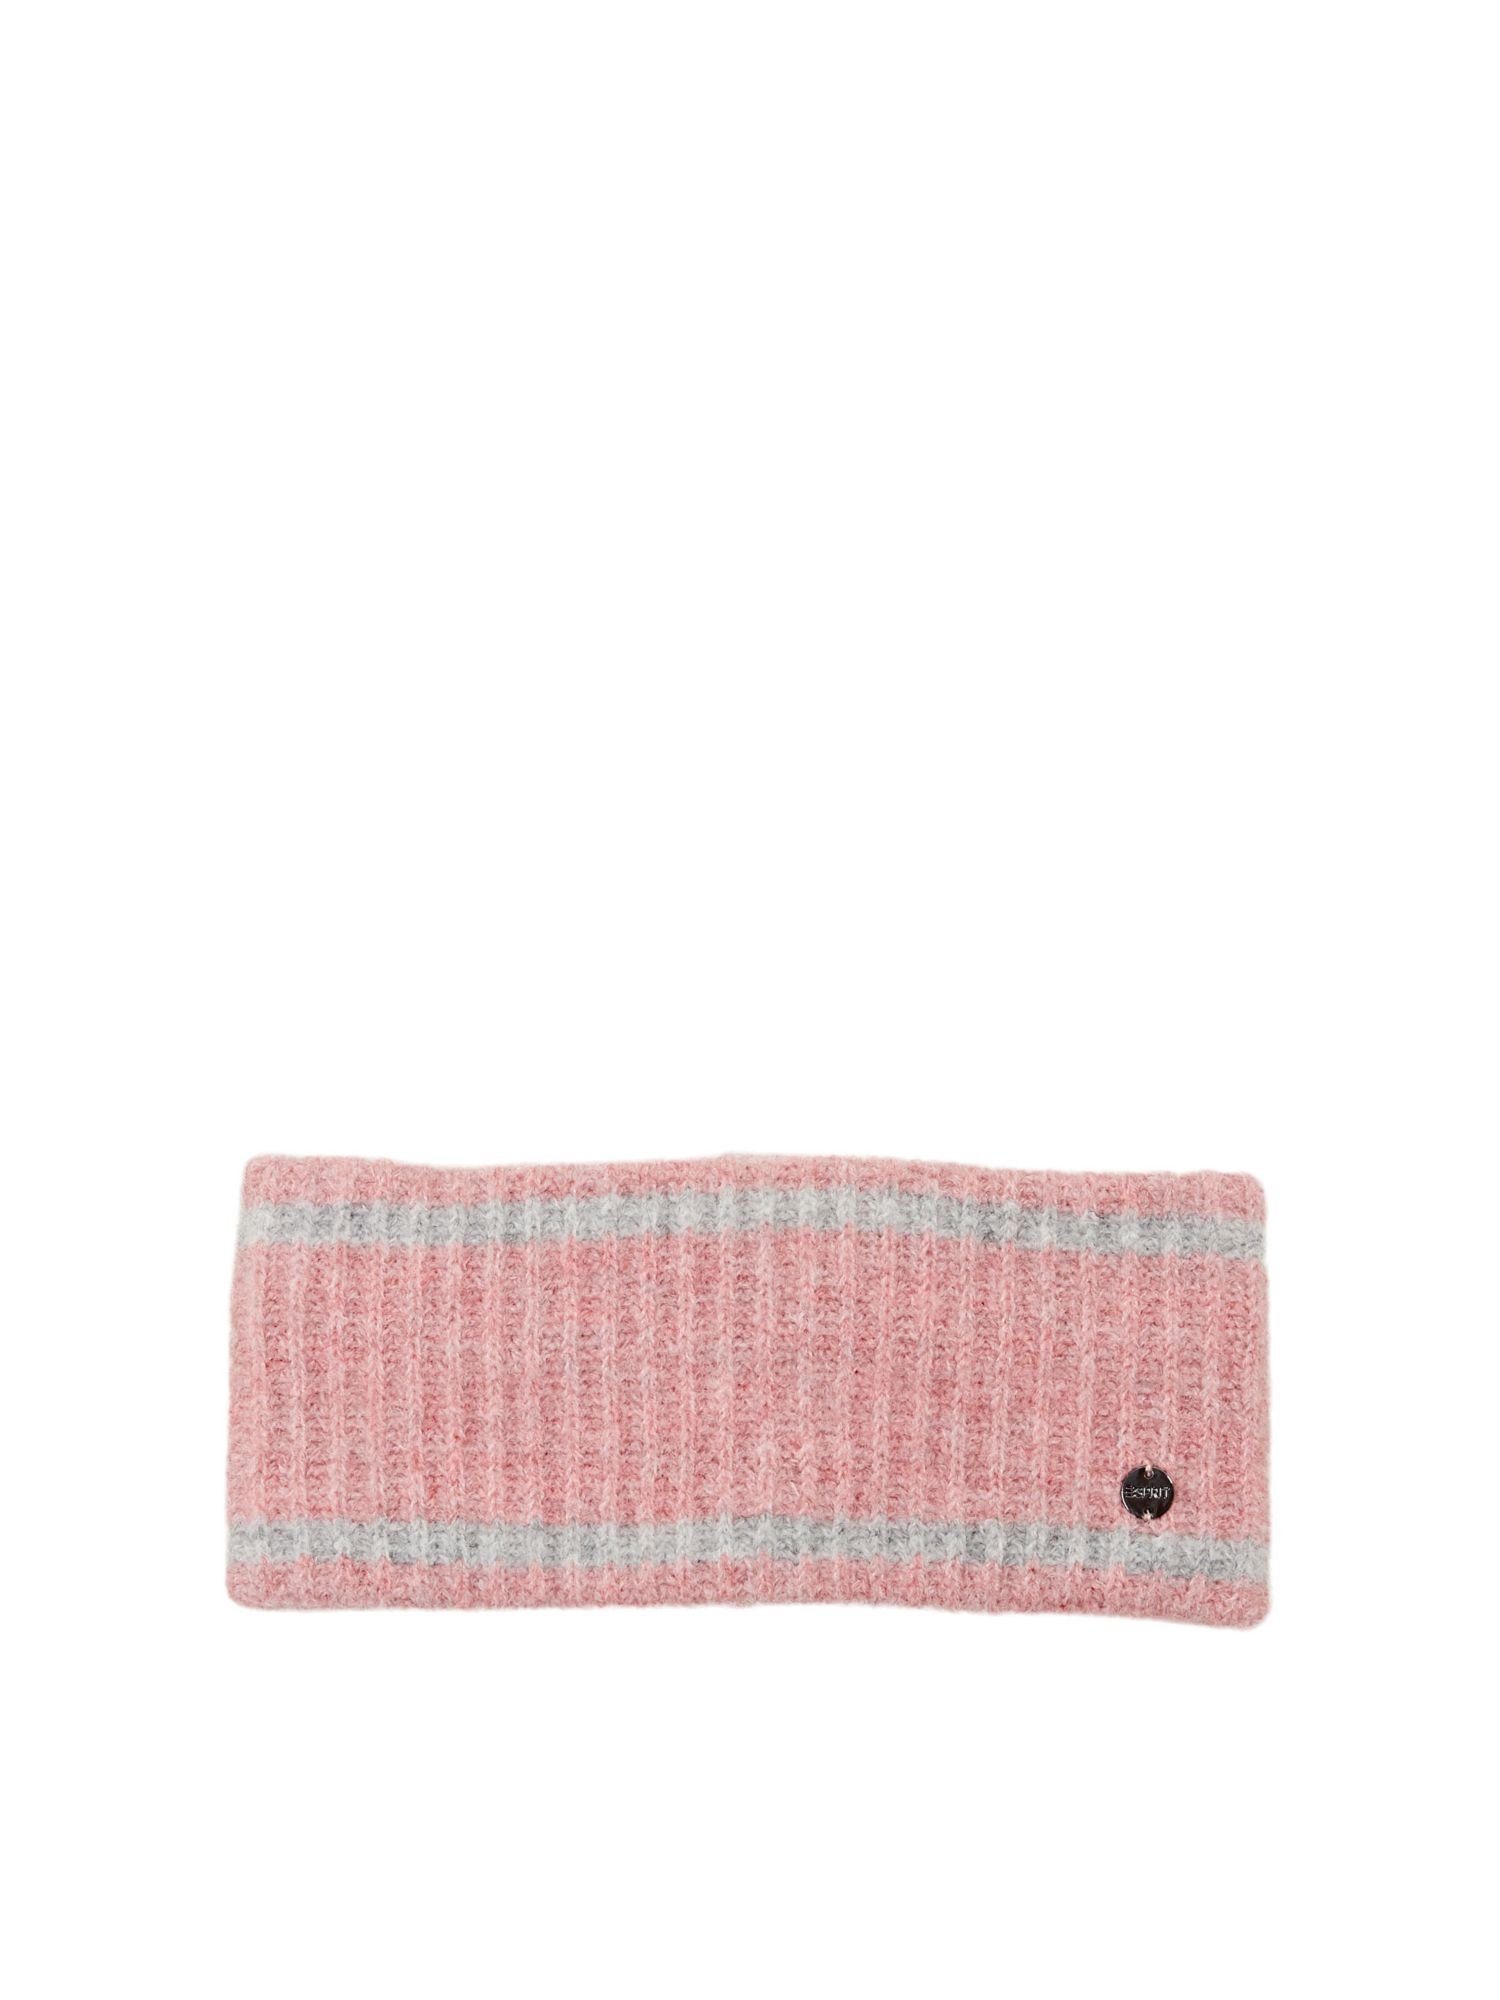 Esprit Strickmütze »Stirnband aus Strick mit Wolle« online kaufen | OTTO